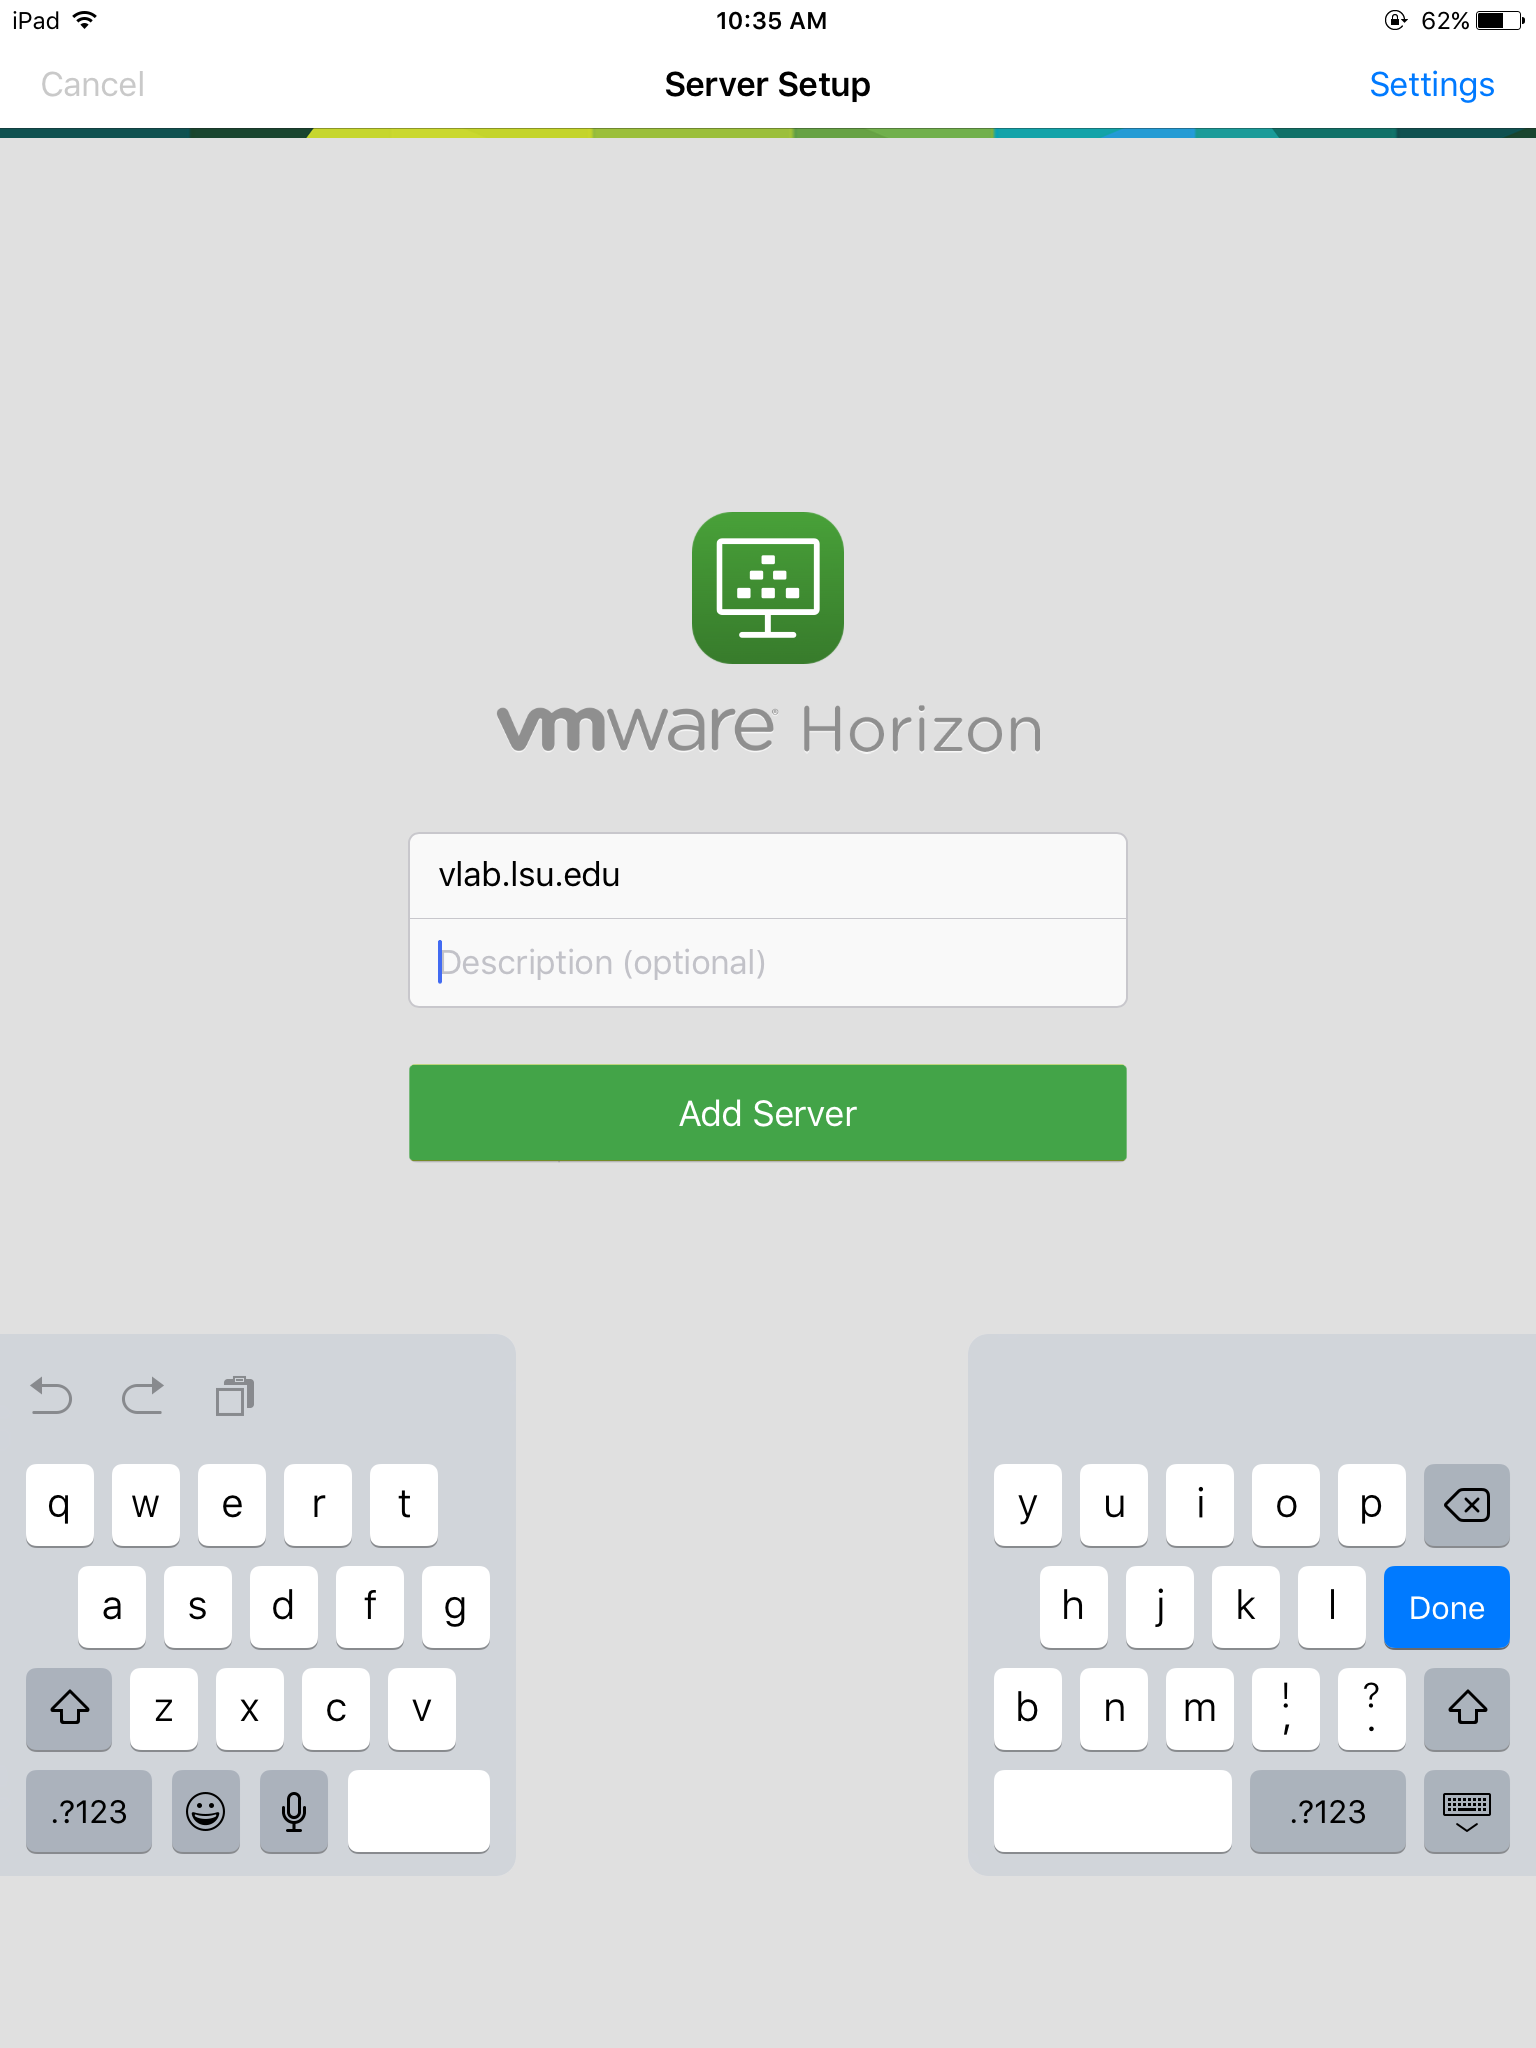 install vmware client